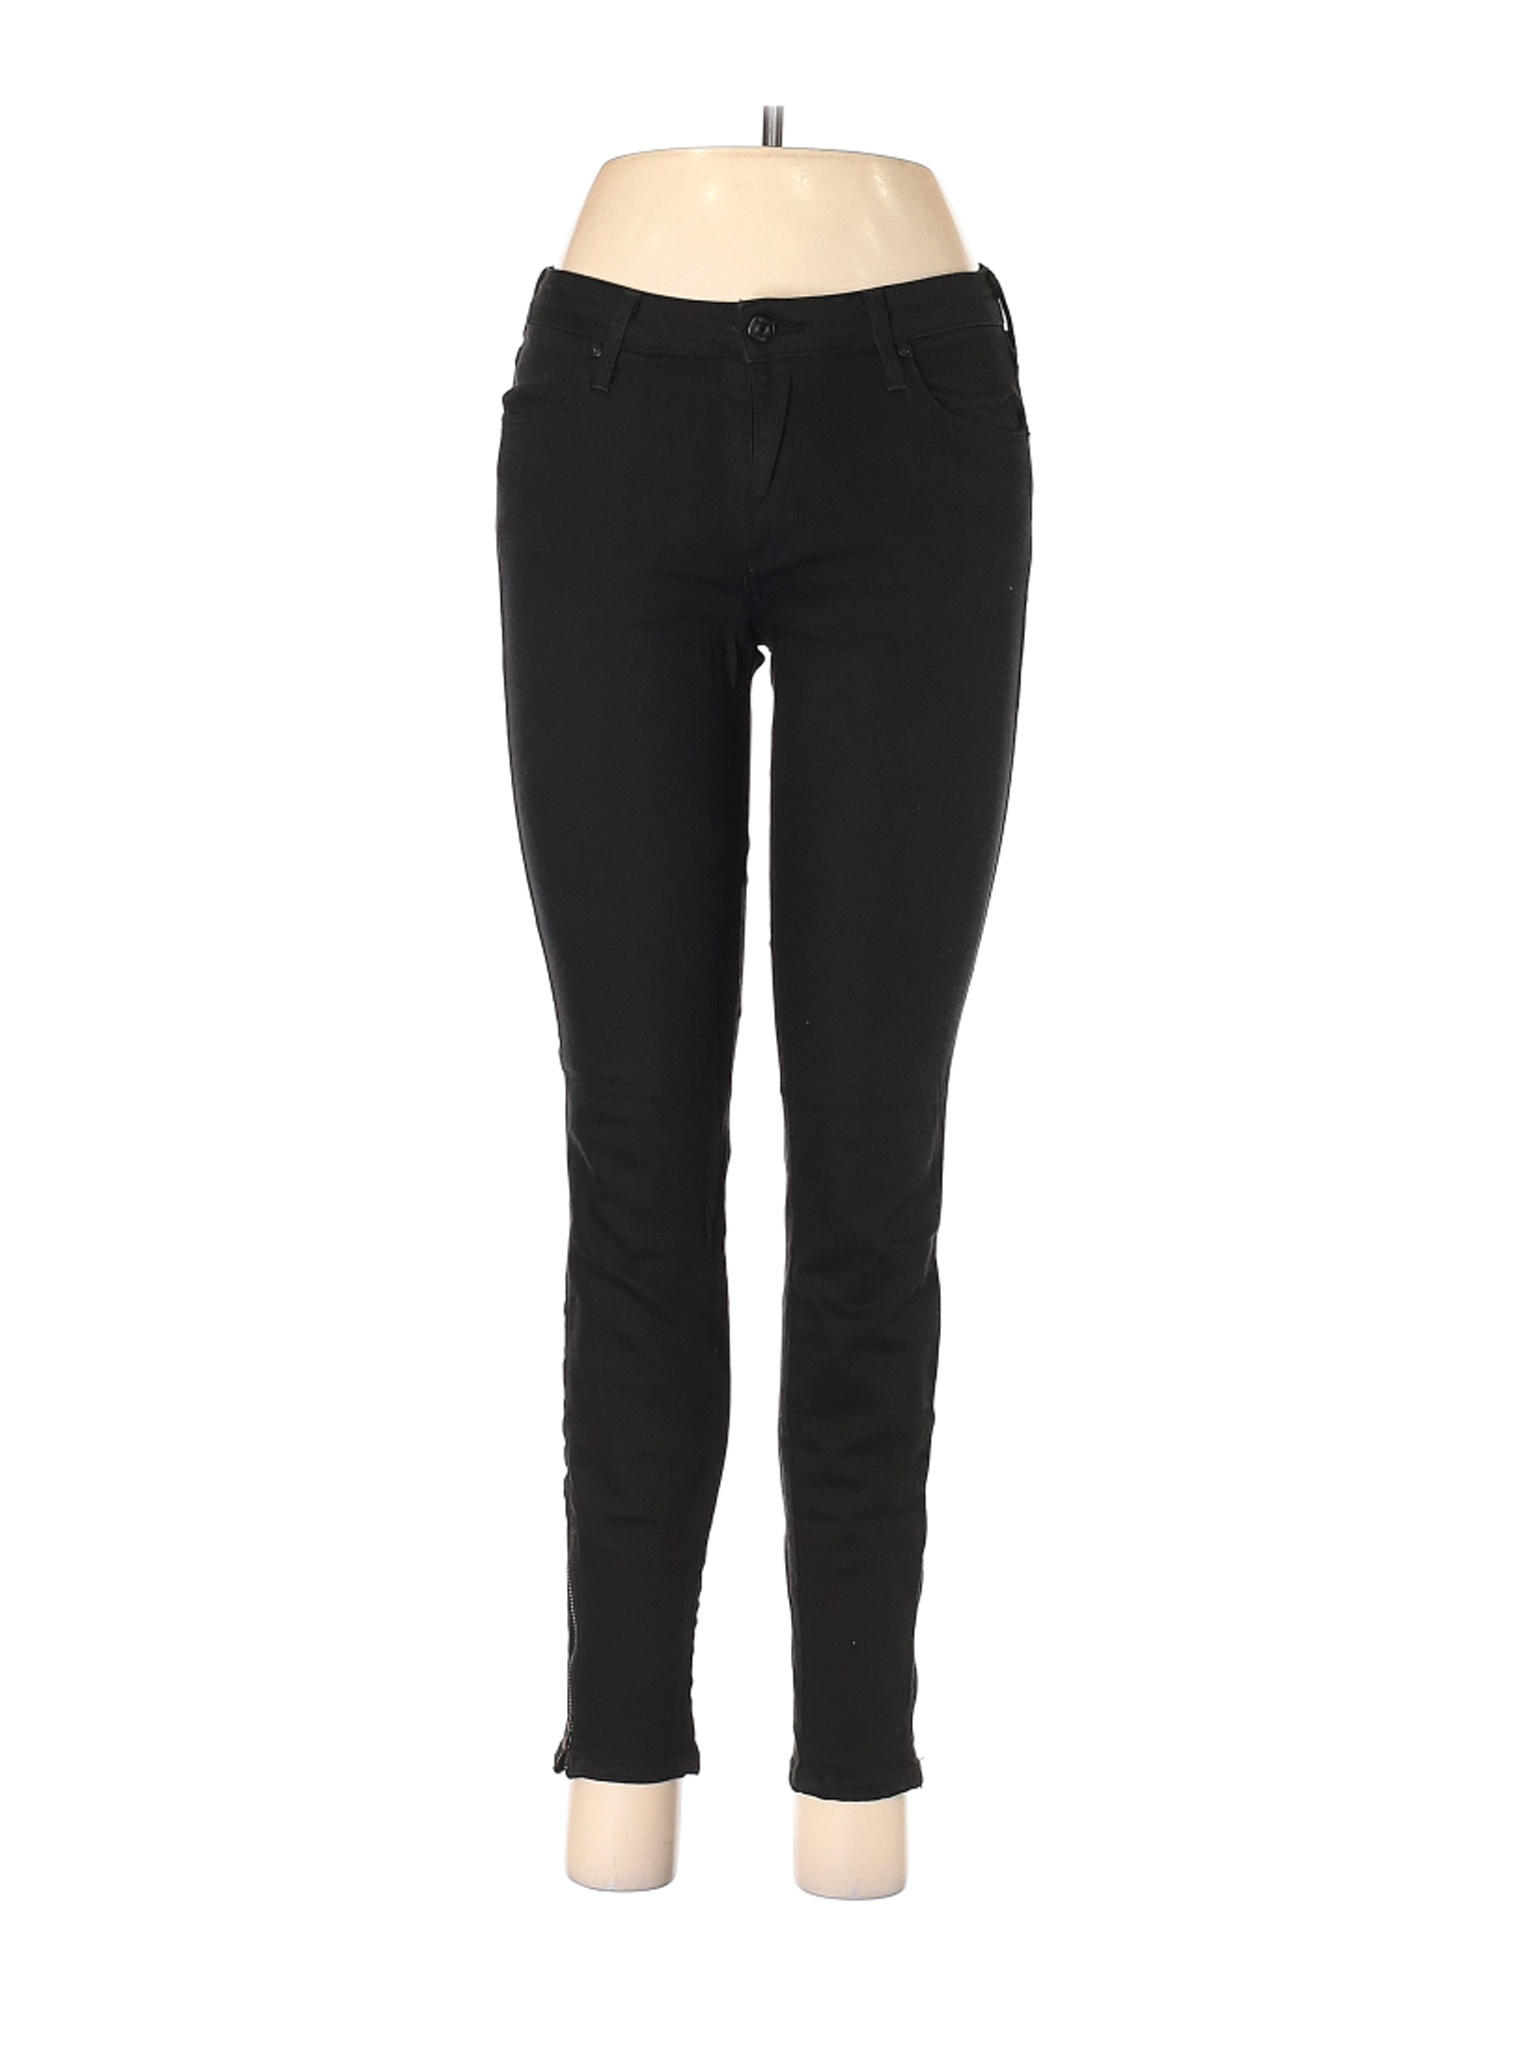 Just Black Women Black Jeans 28W | eBay